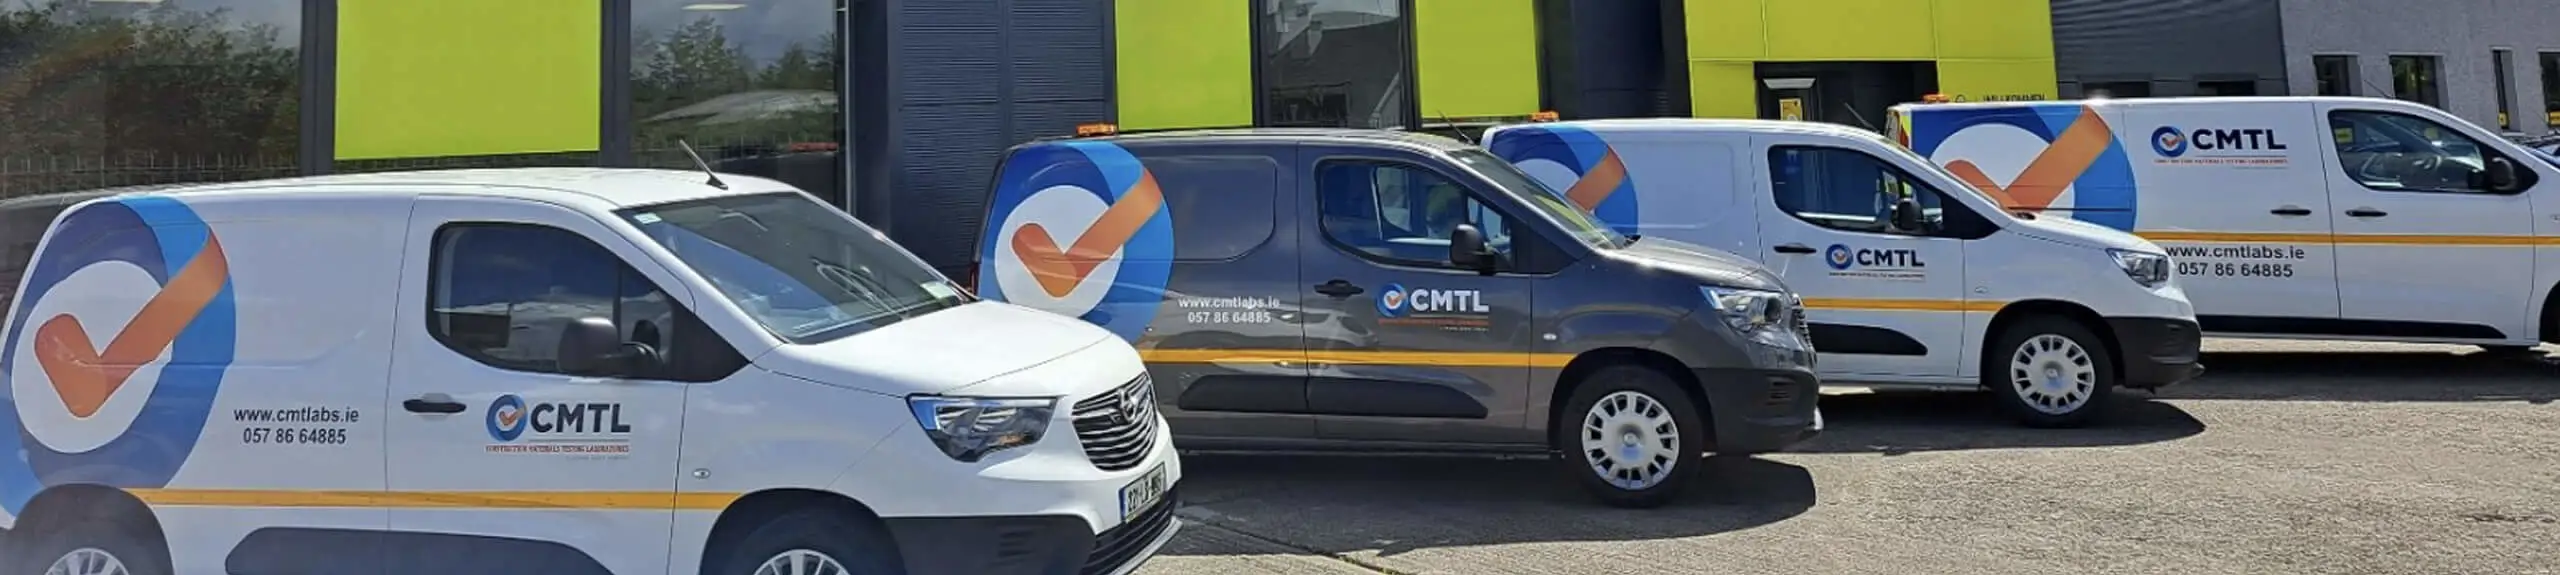 CMTL vans in Ireland